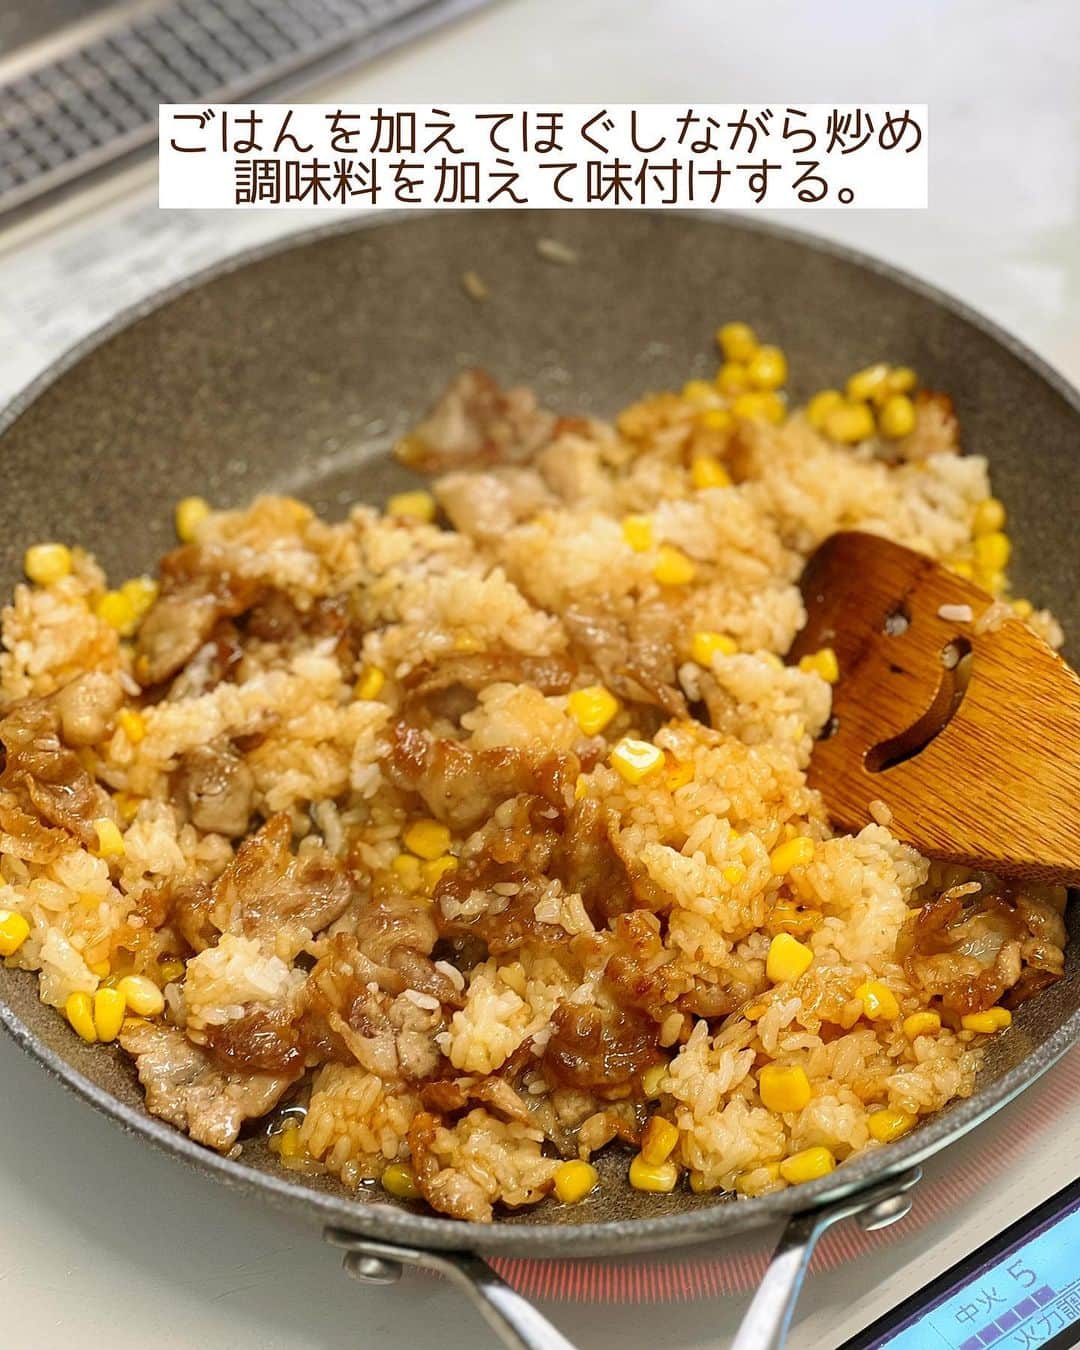 Mizuki【料理ブロガー・簡単レシピ】さんのインスタグラム写真 - (Mizuki【料理ブロガー・簡単レシピ】Instagram)「・連休ごはんにも🍳 ⁡ ［#レシピ ］ ーーーーーーーーーーーーーーーー 豚バラコーンのガーリックライス ーーーーーーーーーーーーーーーー ⁡ ⁡ ⁡ おはようございます☺️ ⁡ 今日ご紹介させていただくのは \ 豚バラコーンのガーリックライス / ⁡ フライパン1つですぐできて こどもも大人も好きな味💕 一皿で大満足の がっつりスタミナごはんです😋 ⁡ 連休ごはんにもおすすめなので よかったらお試しくださいね✨ ⁡ ⁡ ⁡ ＼ ＼ お知らせ ／／ #Mizukiオンライン料理教室 2期生の募集は本日まで📝 5月のレッスン(メニュー)は 『おうちで気軽に韓国ごはん🤭』 ⁡ ⁡ 【簡単・時短・節約レシピ更新中🔻】 @mizuki_31cafe ⁡ ⁡ ⁡ ＿＿＿＿＿＿＿＿＿＿＿＿＿＿＿＿＿＿＿ 【2人分】 豚バラ薄切り肉...150g にんにく...1かけ コーン...大5〜6 万能ねぎ...4本 温かいごはん...300g サラダ油...大1 ●焼肉のたれ...大1 ●塩・コンソメ...各小1/4 ●バター...10g 粗挽き黒こしょう...少々 ⁡ 1.豚肉は3cm幅に切る。にんにくは薄切り、ねぎは小口切りにする。 2.フライパンにサラダ油とにんにくを入れて中火にかけ、にんにくが色付いたら取り出す。 3.そのままのフライパンで豚肉を炒め、火が通ったらコーンも加えてさっと炒める。ごはんを加えてほぐしながら炒め、●を加えて味付けする。 4.仕上げにねぎを加えてひと混ぜし、器に盛り、にんにくと黒こしょうをトッピングする。 ￣￣￣￣￣￣￣￣￣￣￣￣￣￣￣￣￣￣￣ ⁡ ⁡ 《ポイント》 ♦︎ごはんは温かいものを使用して下さい♩ ♦︎豚肉は焼き色が付くまで炒めると香ばしさがアップします♩ ♦︎コーンやねぎの量はお好みでOKです♩ ⁡ ⁡ ⁡ ⁡ ⁡ 𖤣𖥧𖥣𖡡𖥧𖤣✨ 愛用している調理器具や器などは #楽天ROOMに載せてます ‎𐩢𐩺 (ハイライトから飛べます🛍) ⁡ ⁡ ⁡ ⁡ ⁡ 🔶全国の書店・ネット書店で発売中🔶 ⁡ ✼••┈┈┈┈┈••✼••┈┈┈┈┈••✼ 今日のごはんこれに決まり！ ‎𓊆#Mizukiのレシピノート 500品𓊇 ✼••┈┈┈┈┈••✼••┈┈┈┈┈••✼ ⁡ ˗ˏˋ おかげさまで23万部突破 ˎˊ˗ 料理レシピ本大賞準大賞を受賞しました🙇‍♀️ ⁡ 6000点の中からレシピを厳選し まさかの【500レシピ掲載】❣️ 肉や魚のメインおかずはもちろん 副菜、丼、麺、スープ、お菓子 ハレの日のレシピ、鍋のレシピまで 全てこの一冊で完結𓌉◯𓇋✨ ⁡ ⁡ ⁡ ✼••┈┈┈••✼••┈┈┈••✼ Mizukiのカンタン手作り   𓊆 #3時のおやつ 𓊇 ✼••┈┈┈••✼••┈┈┈••✼ ⁡ 『3分クッキング』で連載中の 「Mizukiのカンタン手作り」 ‎4年分のおやつが1冊になりました！ ❝オーブンなしで❞ 身近な材料と道具でできる 簡単、手軽なおやつを80品🍪 ⁡ ⁡ ⁡ ⁡ ⁡ #豚バラコーンガーリックライスm #ガーリックライス #豚肉 #豚肉レシピ #ランチ #炒飯 #ピラフ #丼 #節約料理 #簡単料理  #時短料理 #料理 #mizukiレシピ  #アルモンデ #時短レシピ #節約レシピ #簡単レシピ」4月30日 7時03分 - mizuki_31cafe